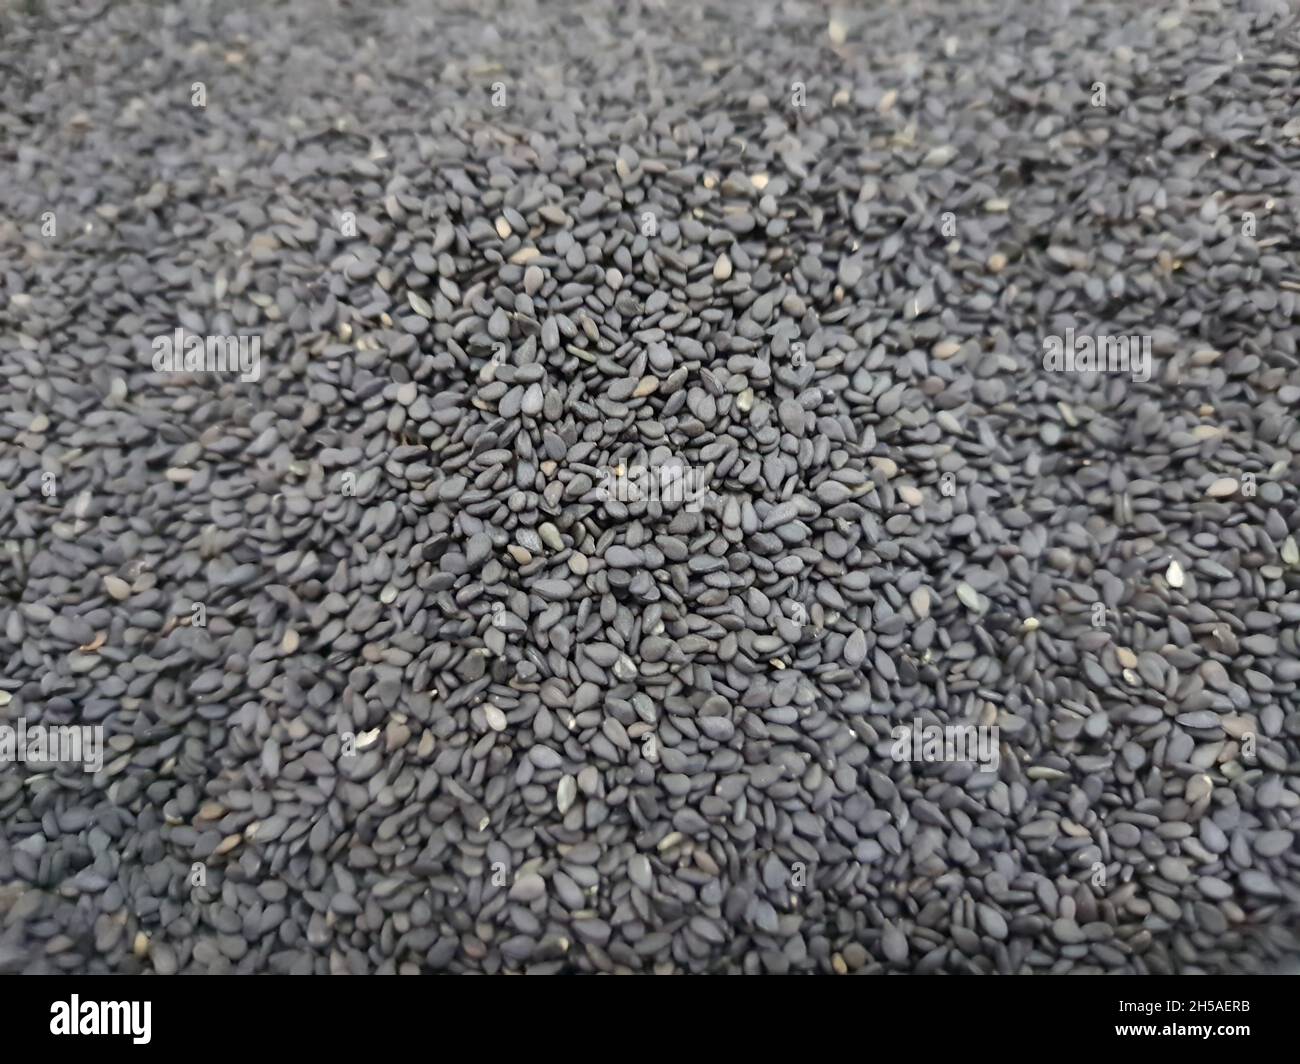 Black sesame seeds (Sesamum indicum). Top view, backgrounds and textures. Stock Photo